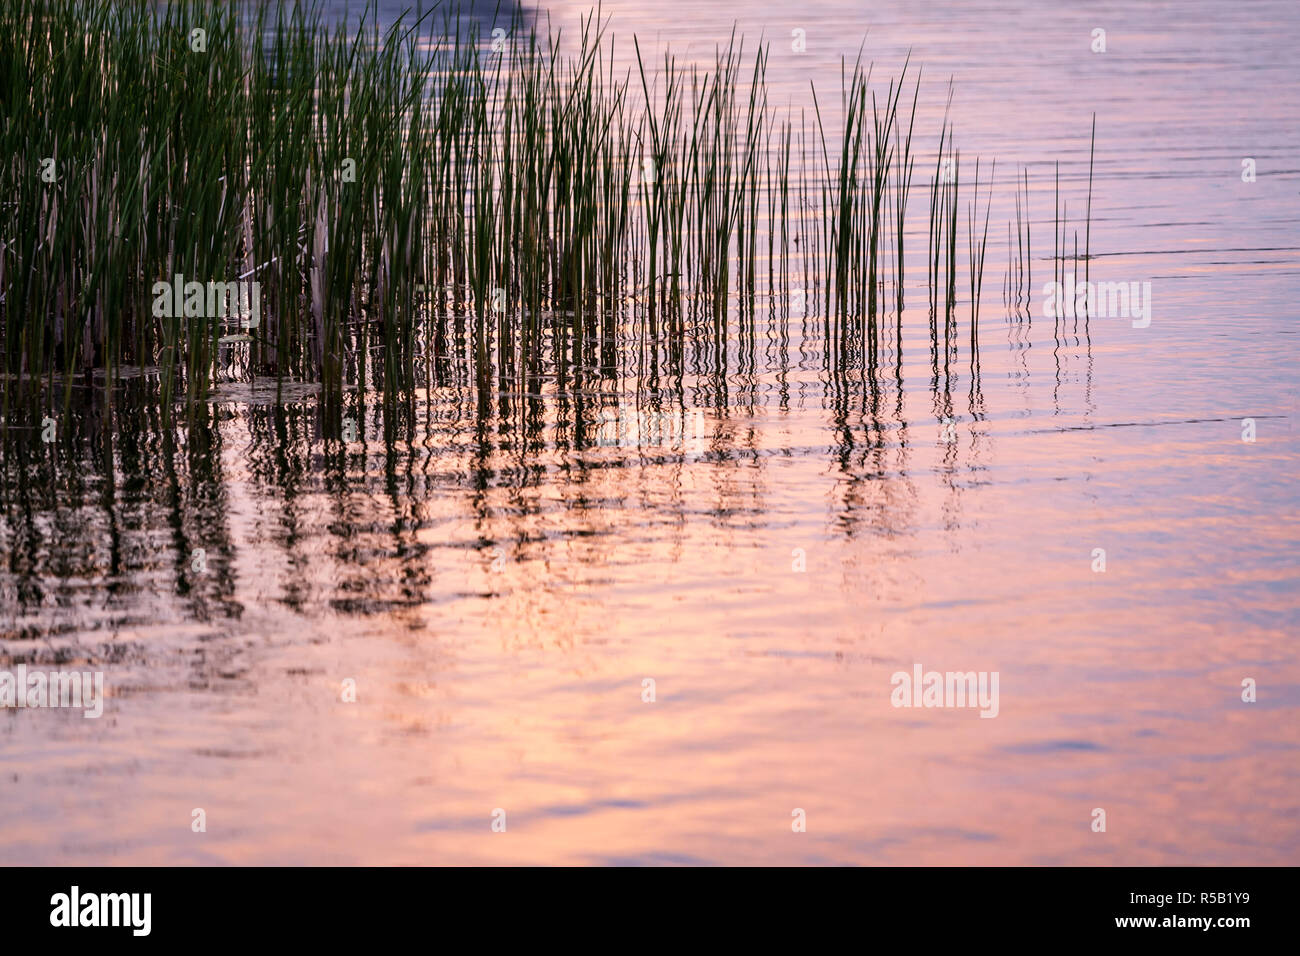 La riflessione di un Cielo di tramonto nella superficie del lago con erbe acquatiche. Foto Stock